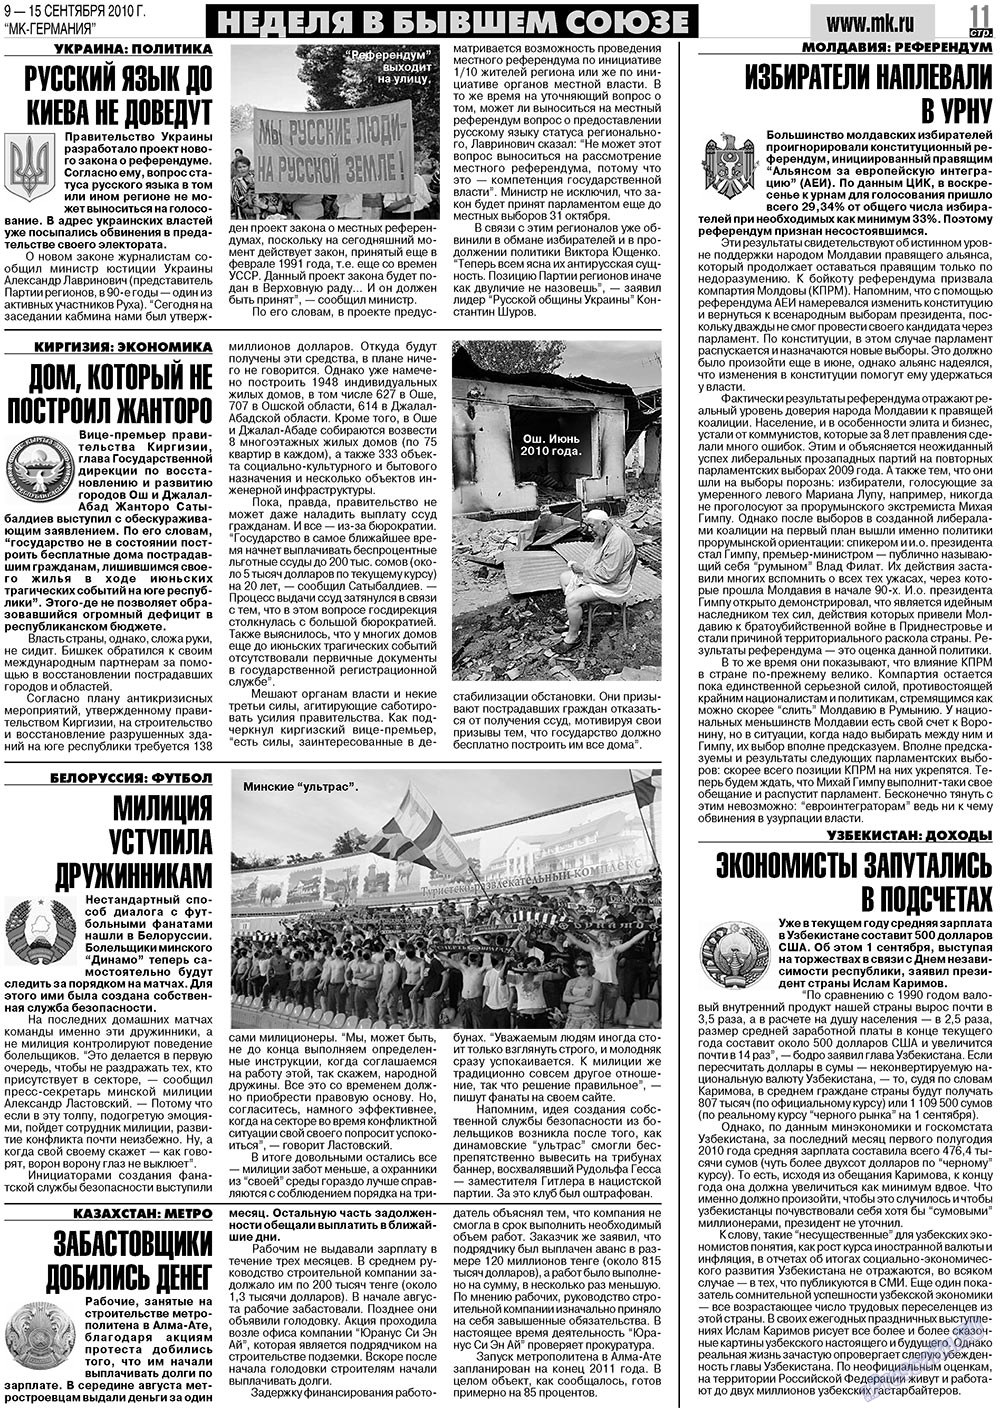 МК-Германия (газета). 2010 год, номер 37, стр. 11